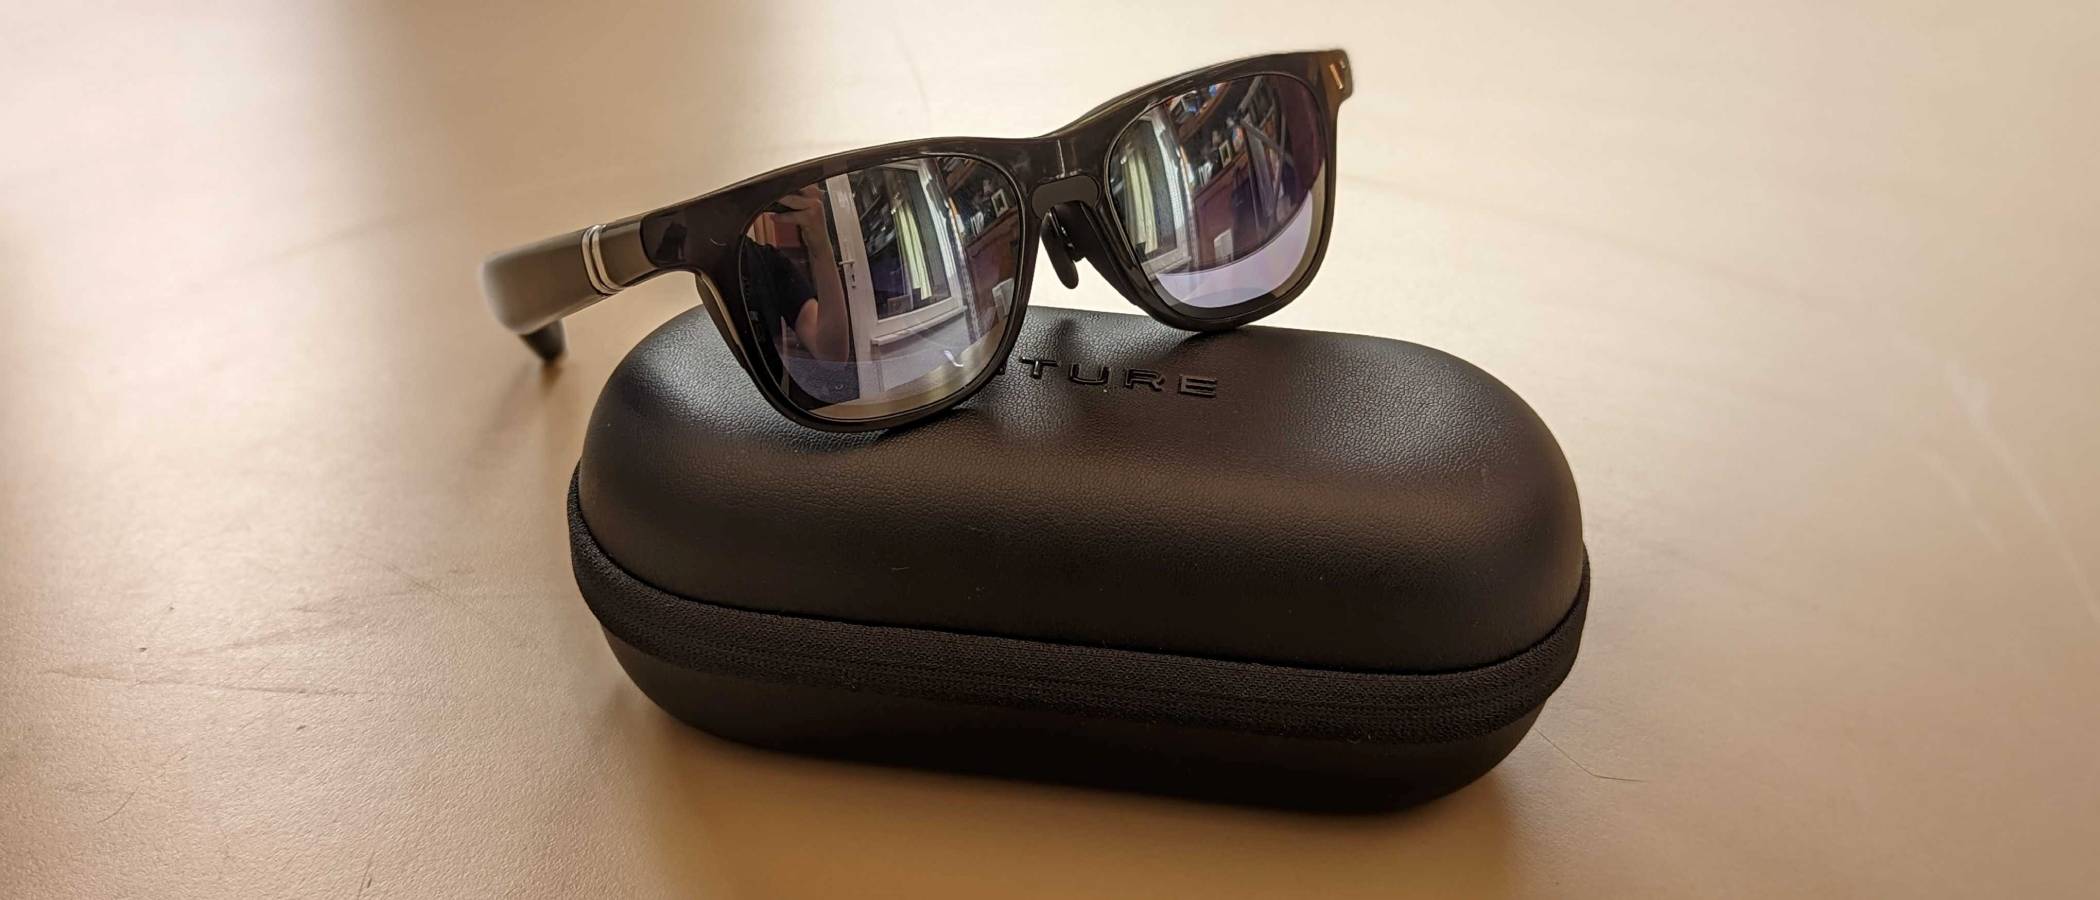 VITURE One XR Glasses: Smart glasses, not so smart design | TechRadar